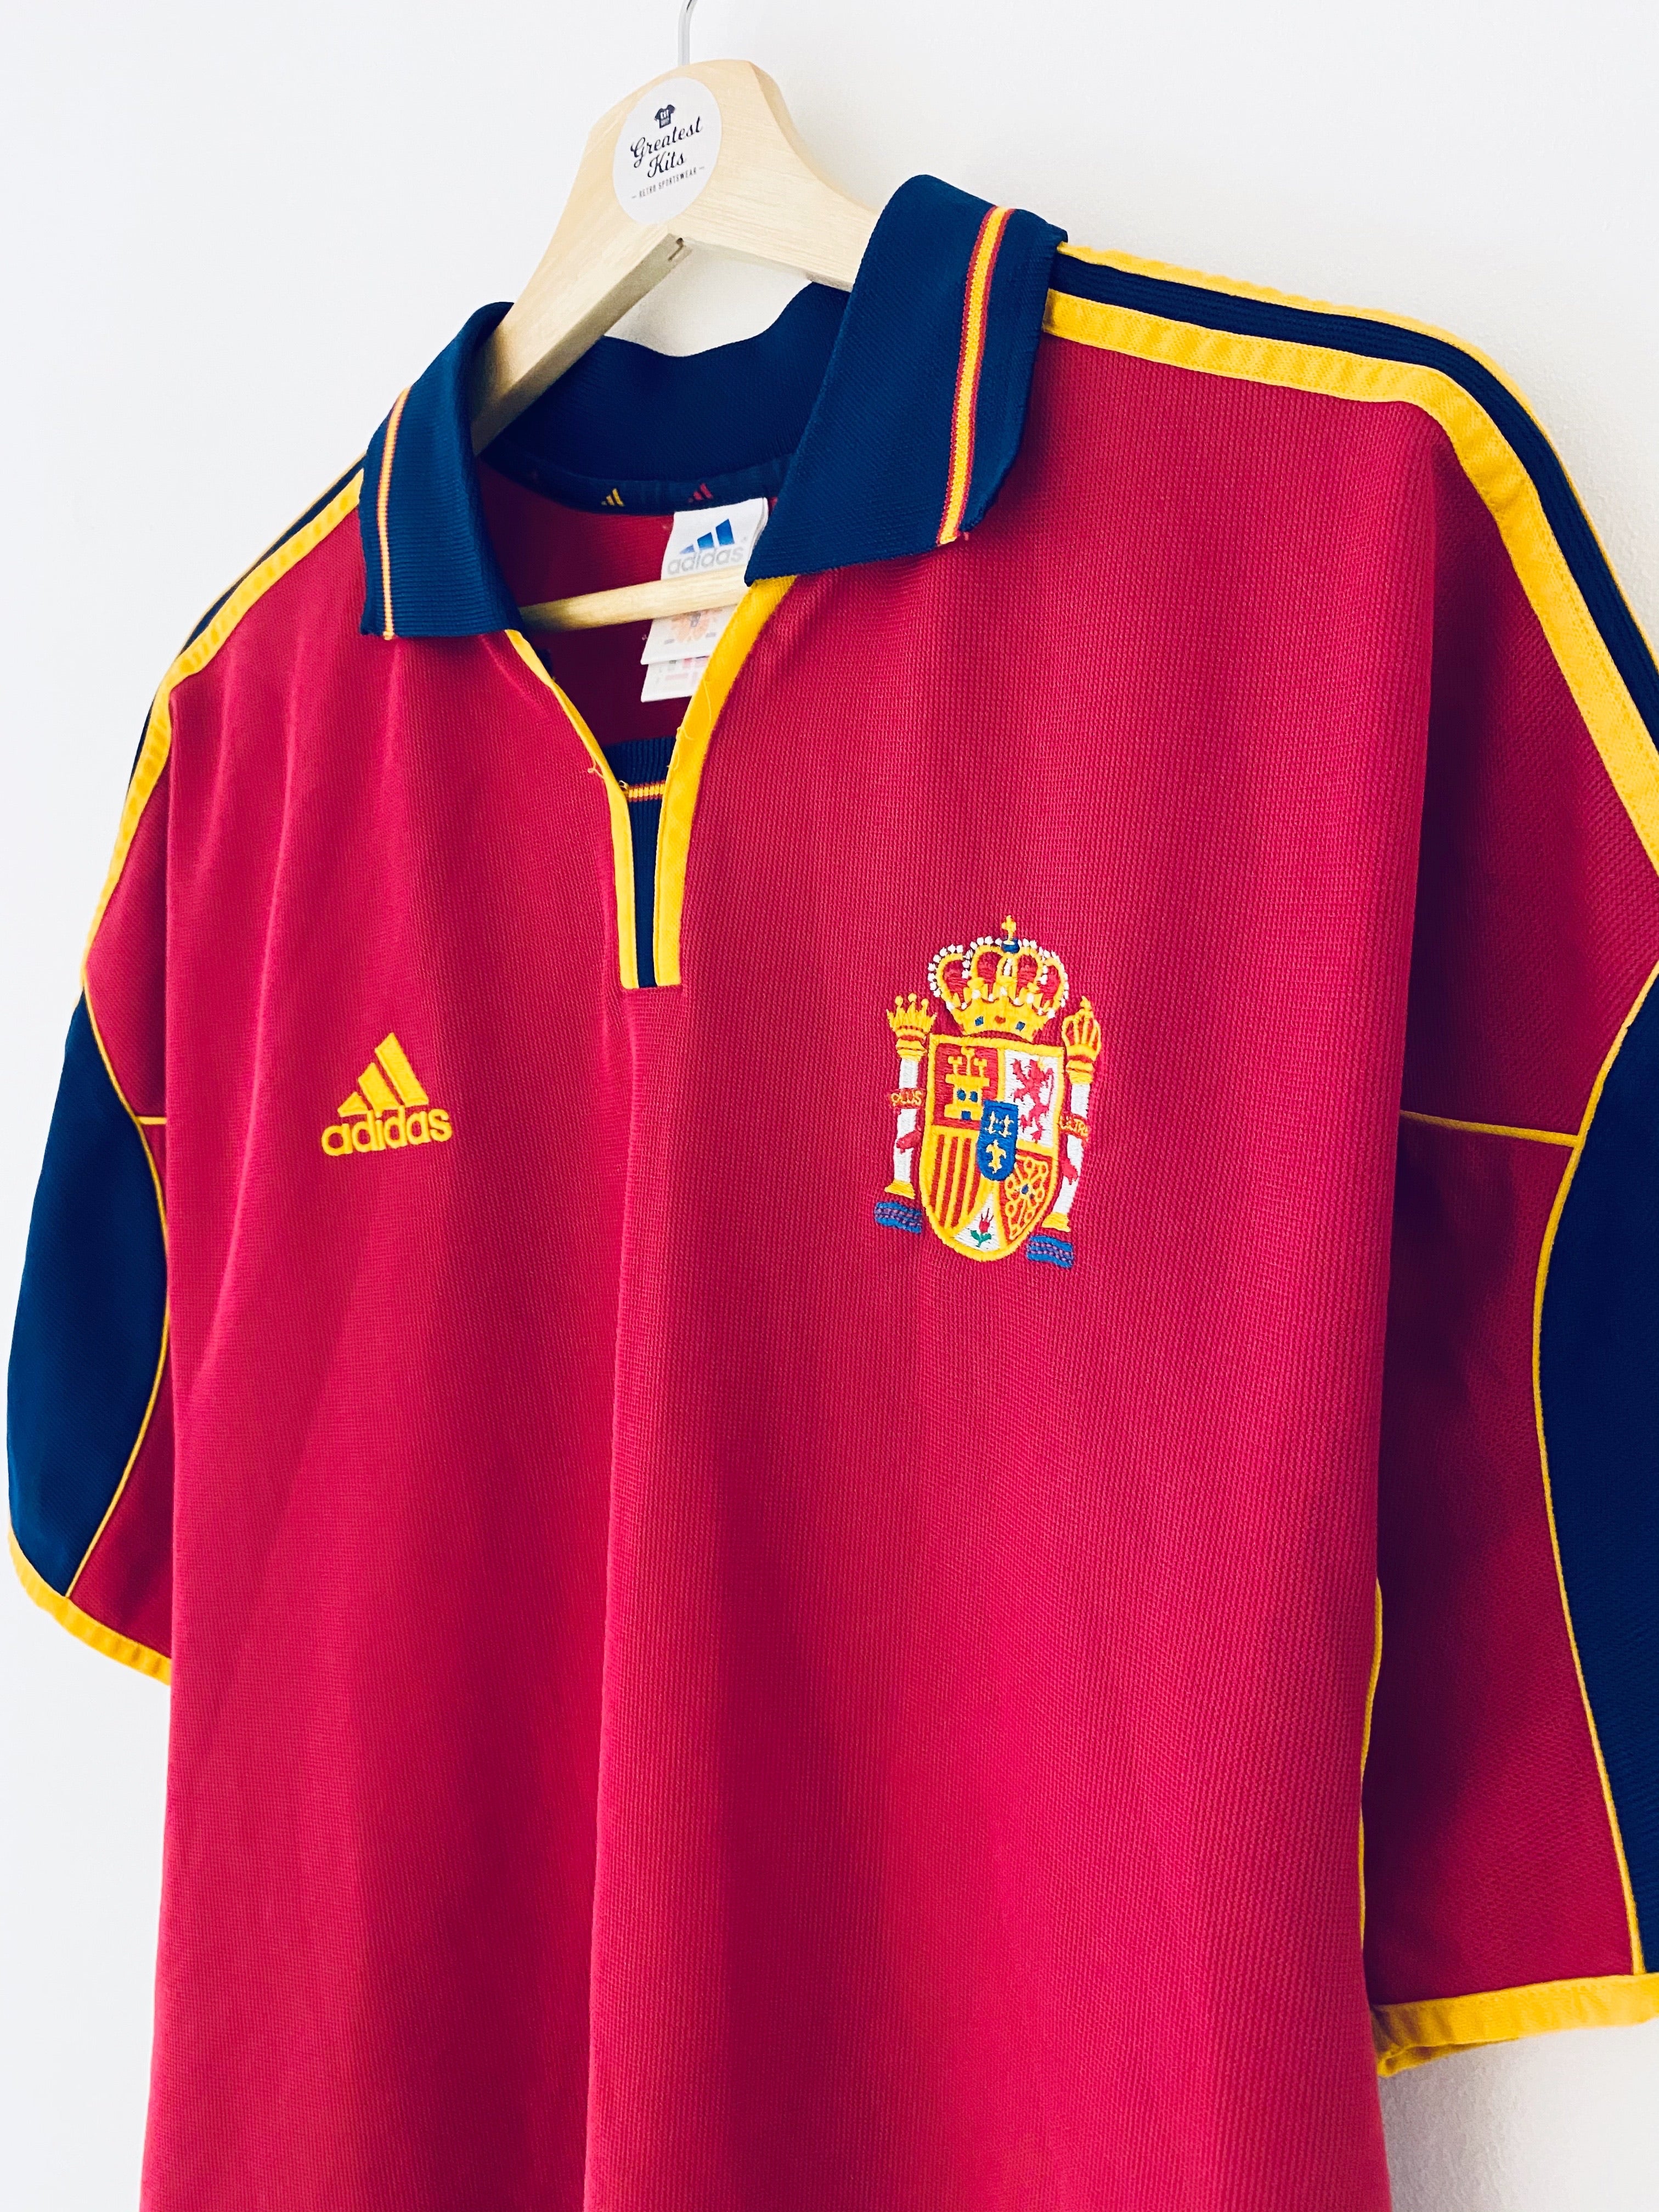 1999/02 Spain Home Shirt (L) 9/10